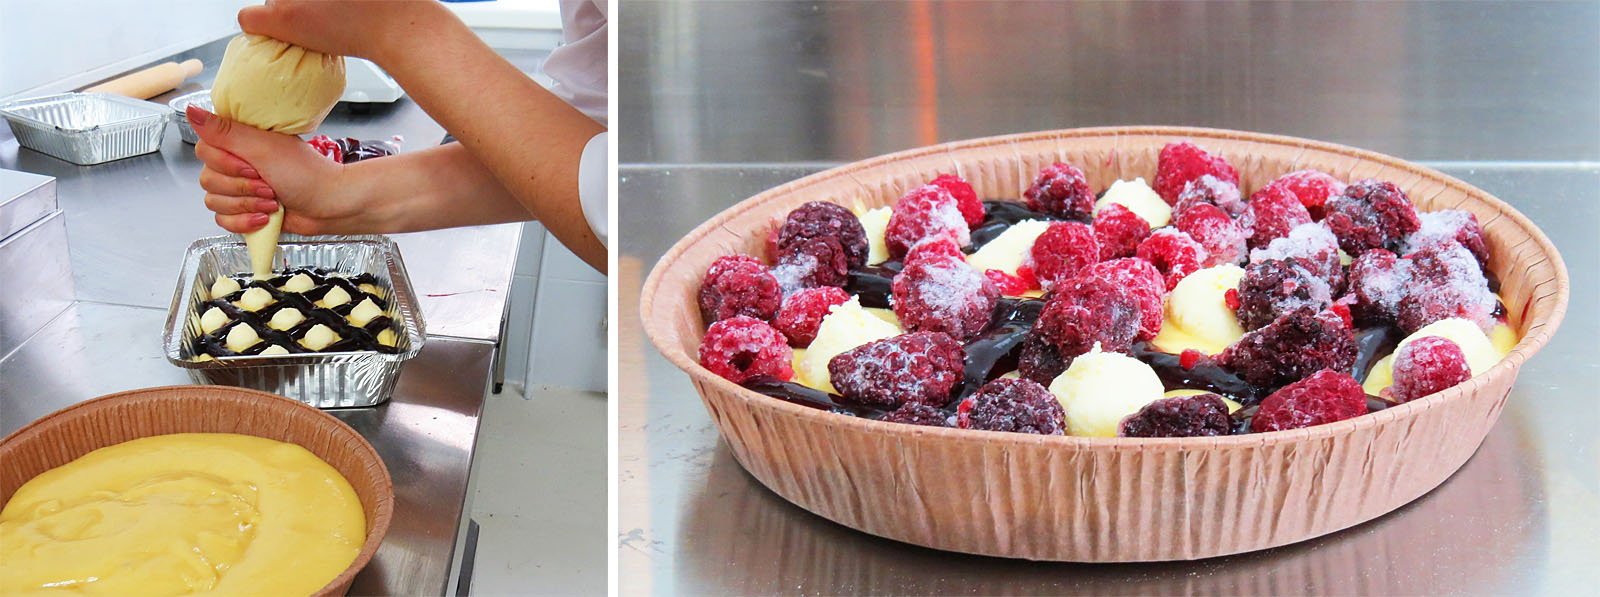 Пластовые пироги  с творожной начинкой и свежими ягодам.